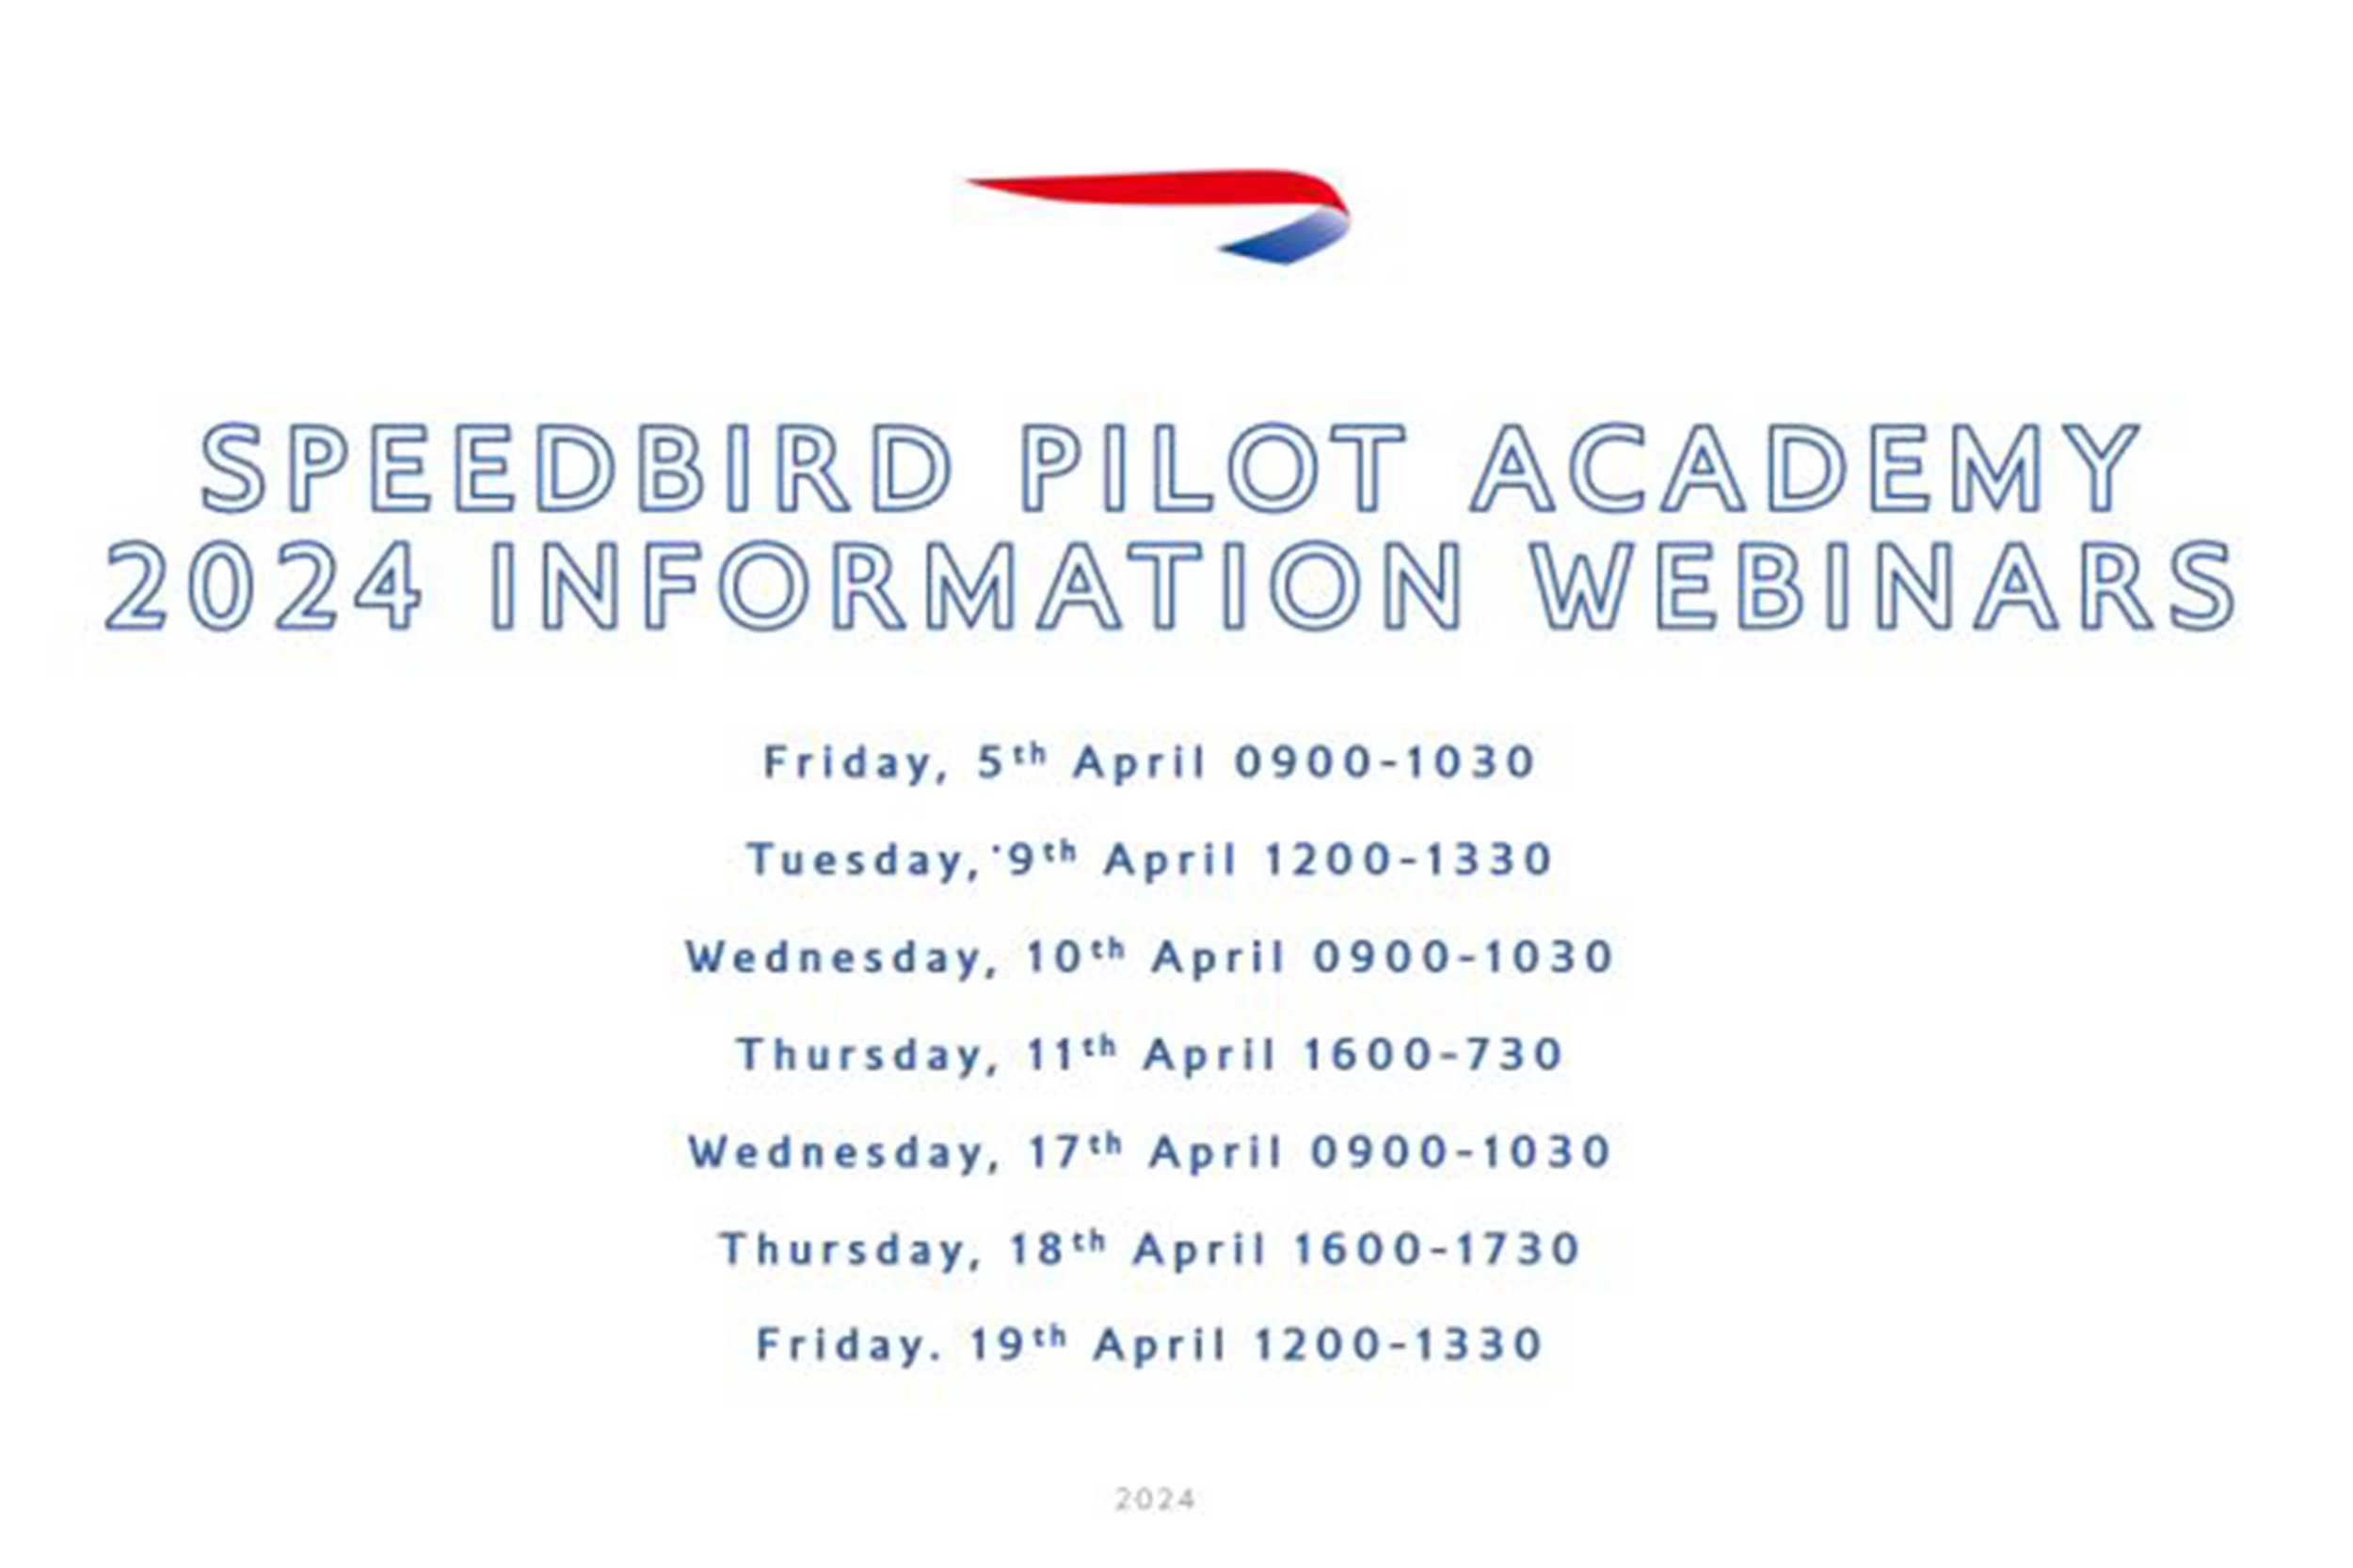 British Airways Speedbird Pilot academy webinars